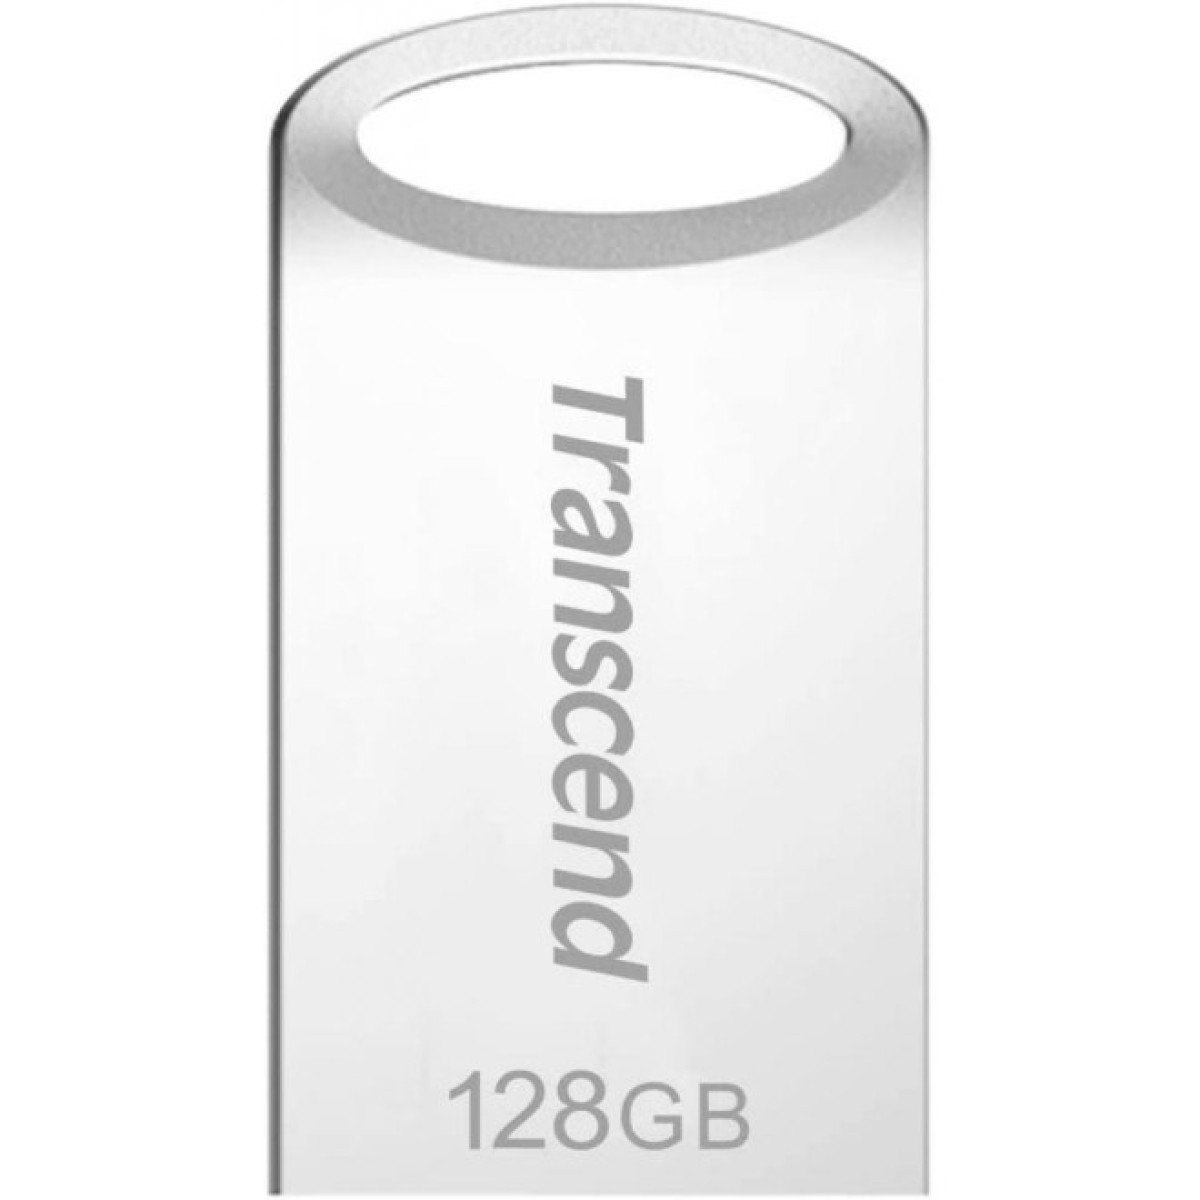 USB флеш накопитель Transcend 128GB JetFlash 710 Silver USB 3.0 (TS128GJF710S) 98_98.jpg - фото 1